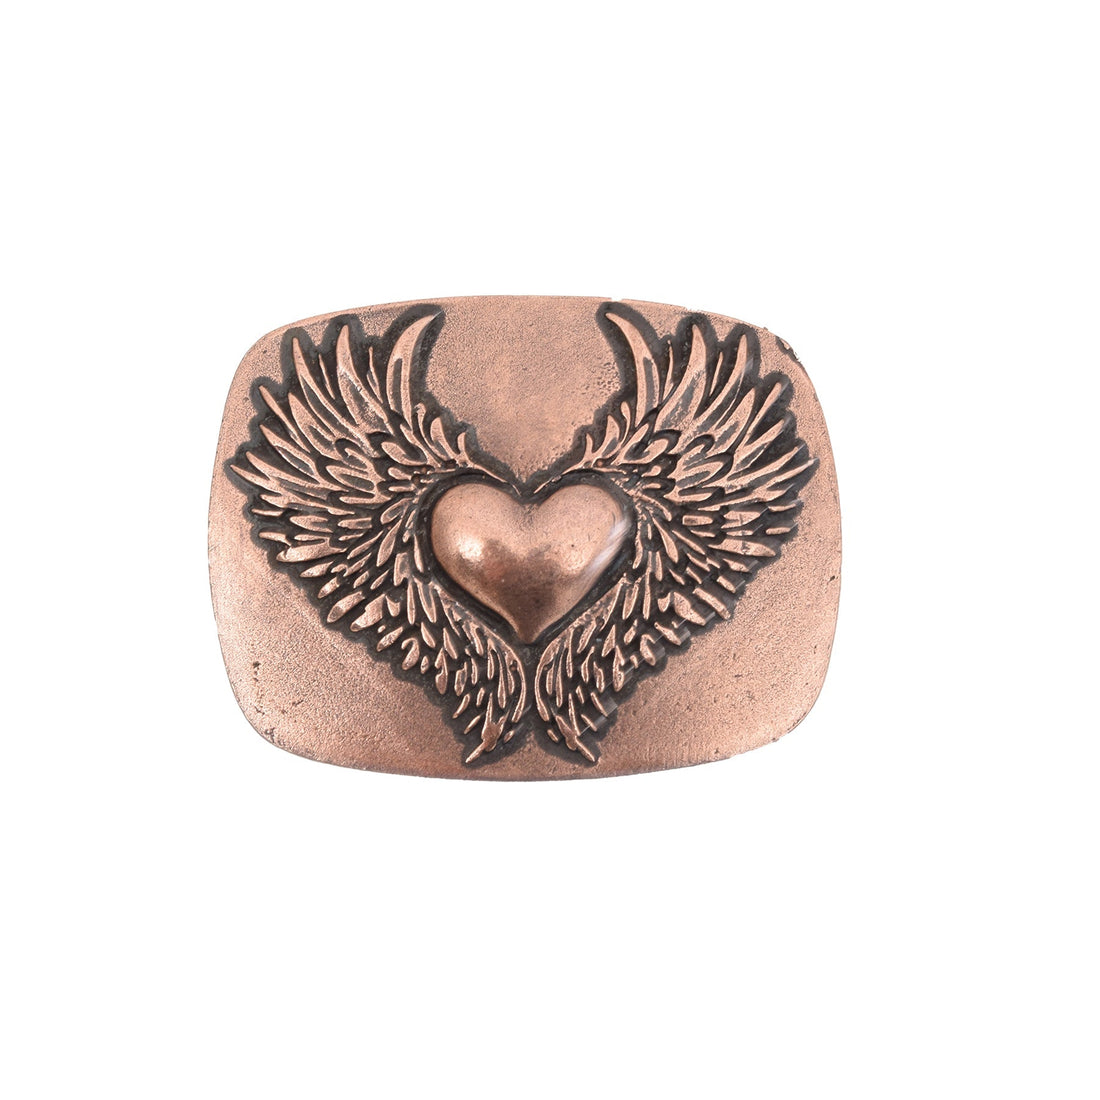 Heart of Wings Bronze Toned Removable Metal Belt Buckle - Buckles Zengoda Shop online from Artisan Brands